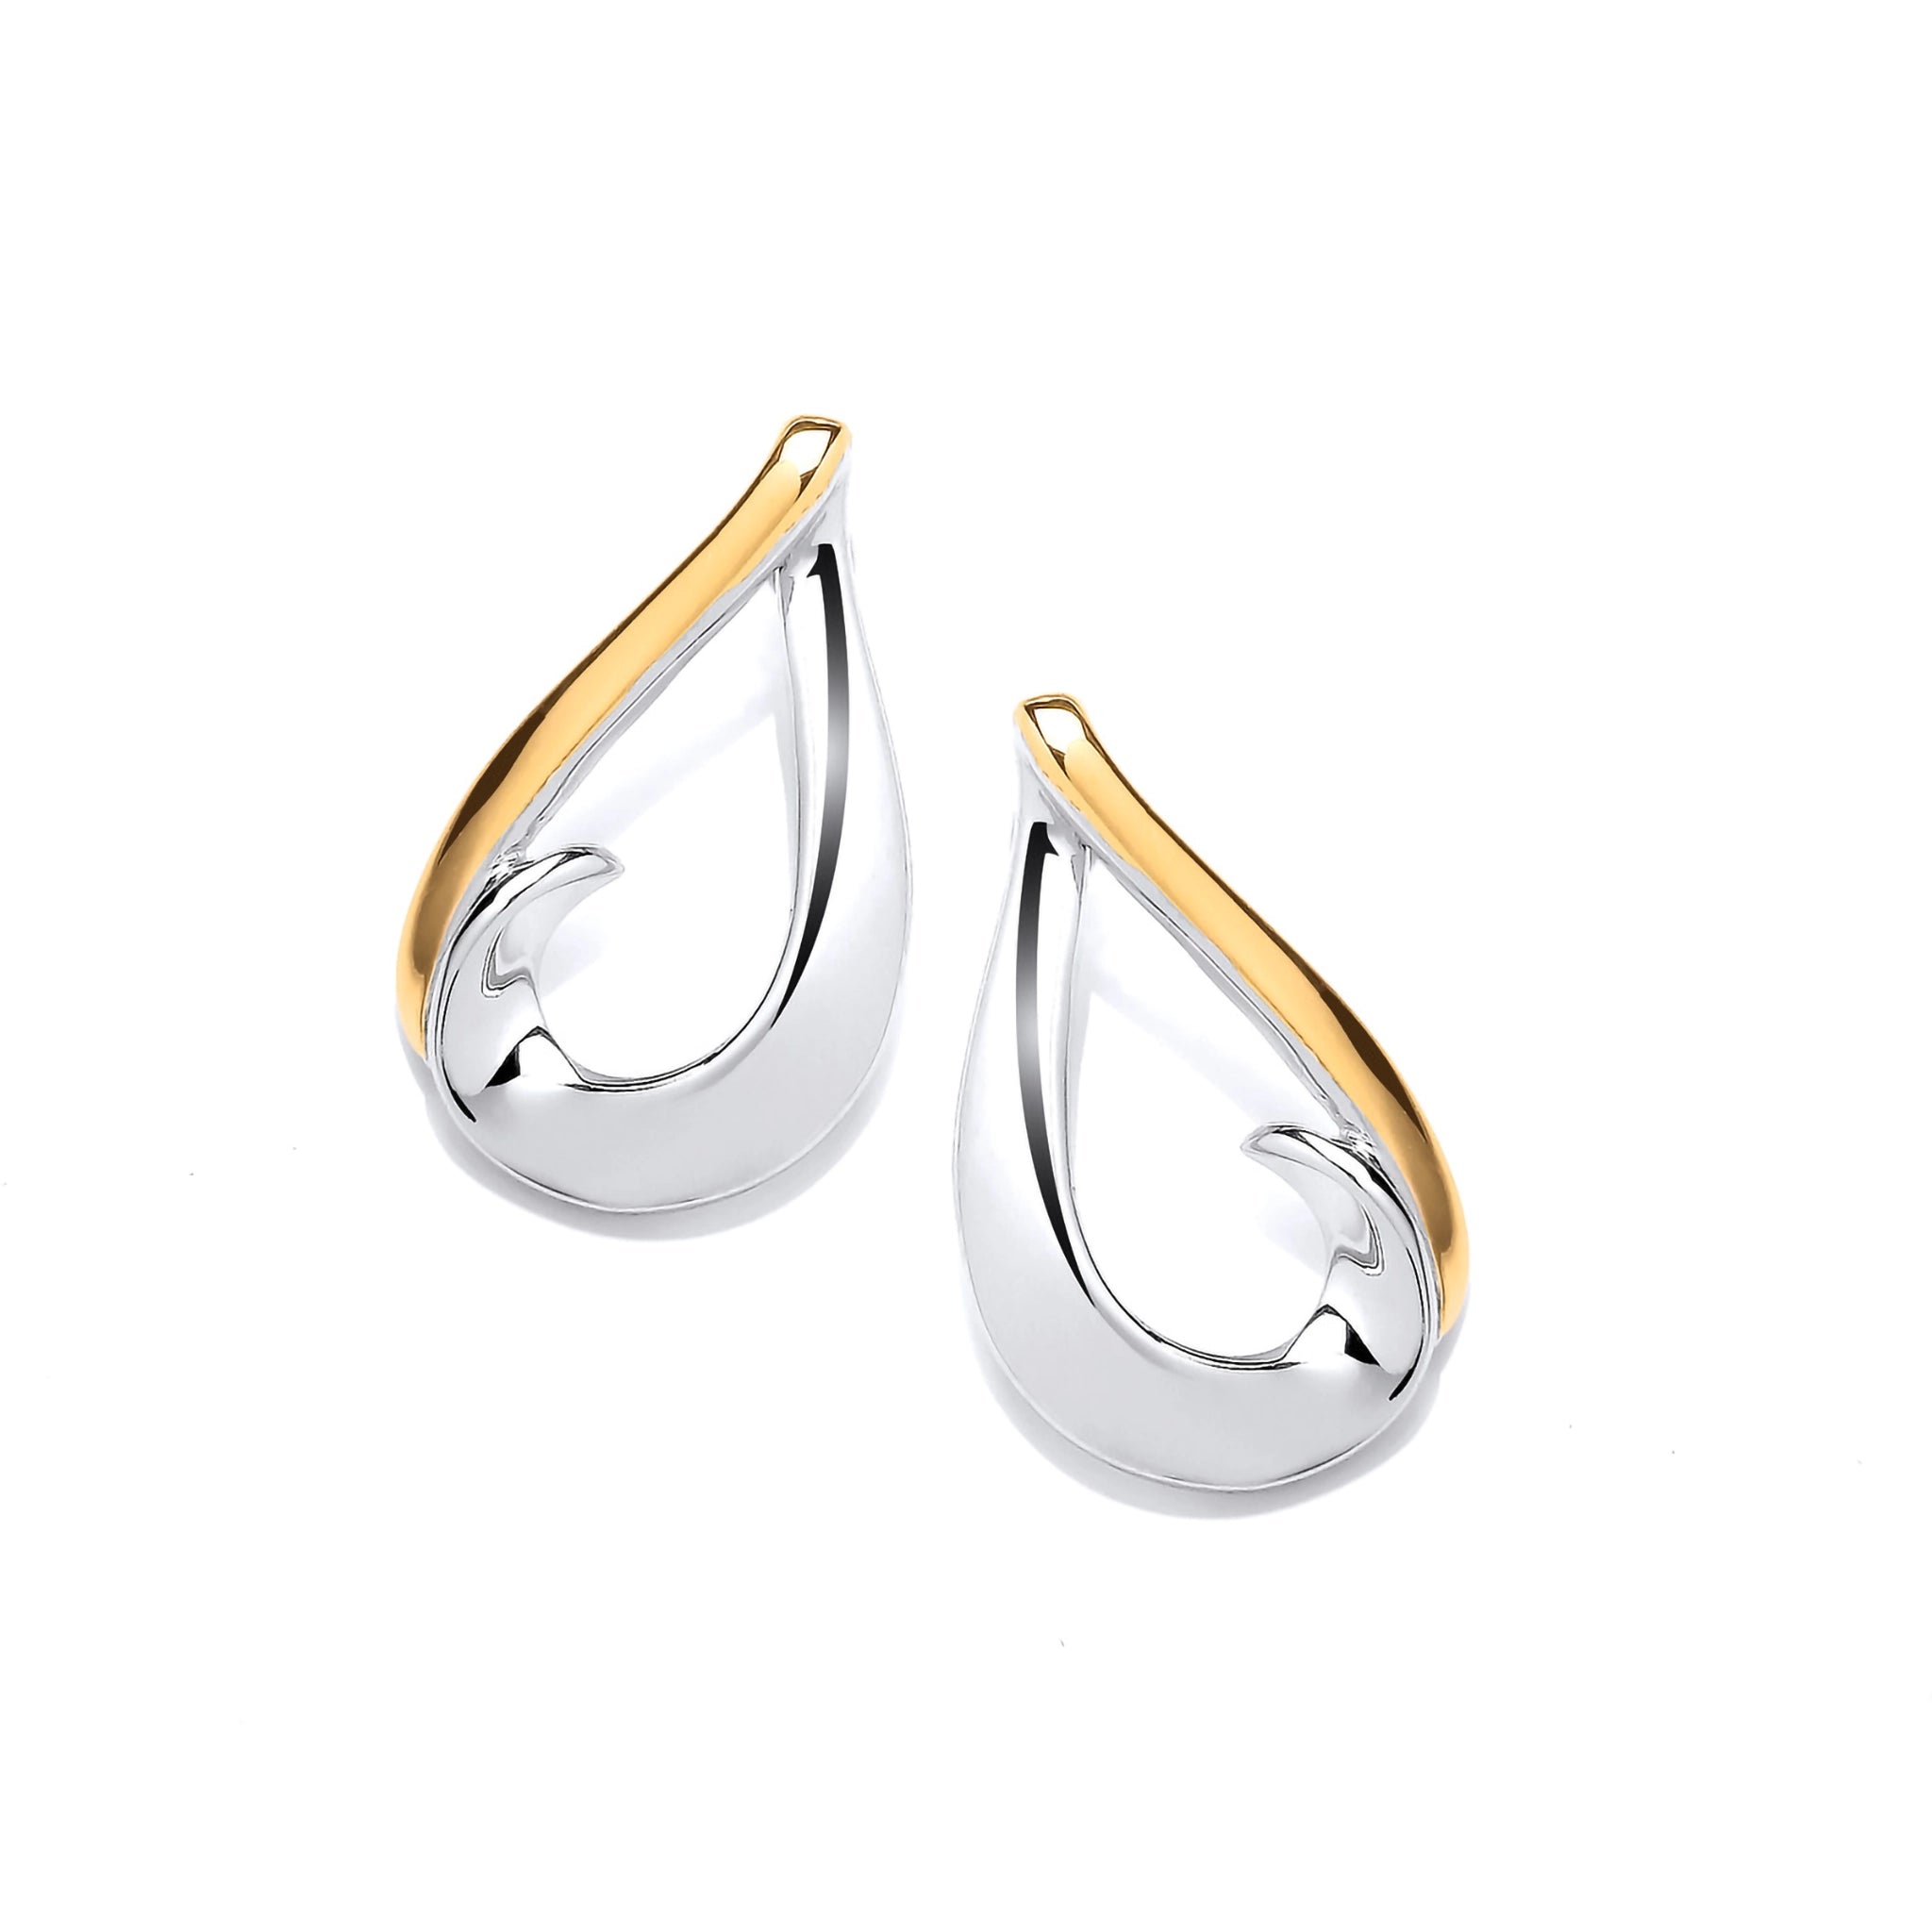 Silver swirling teardrop earrings with gold detail